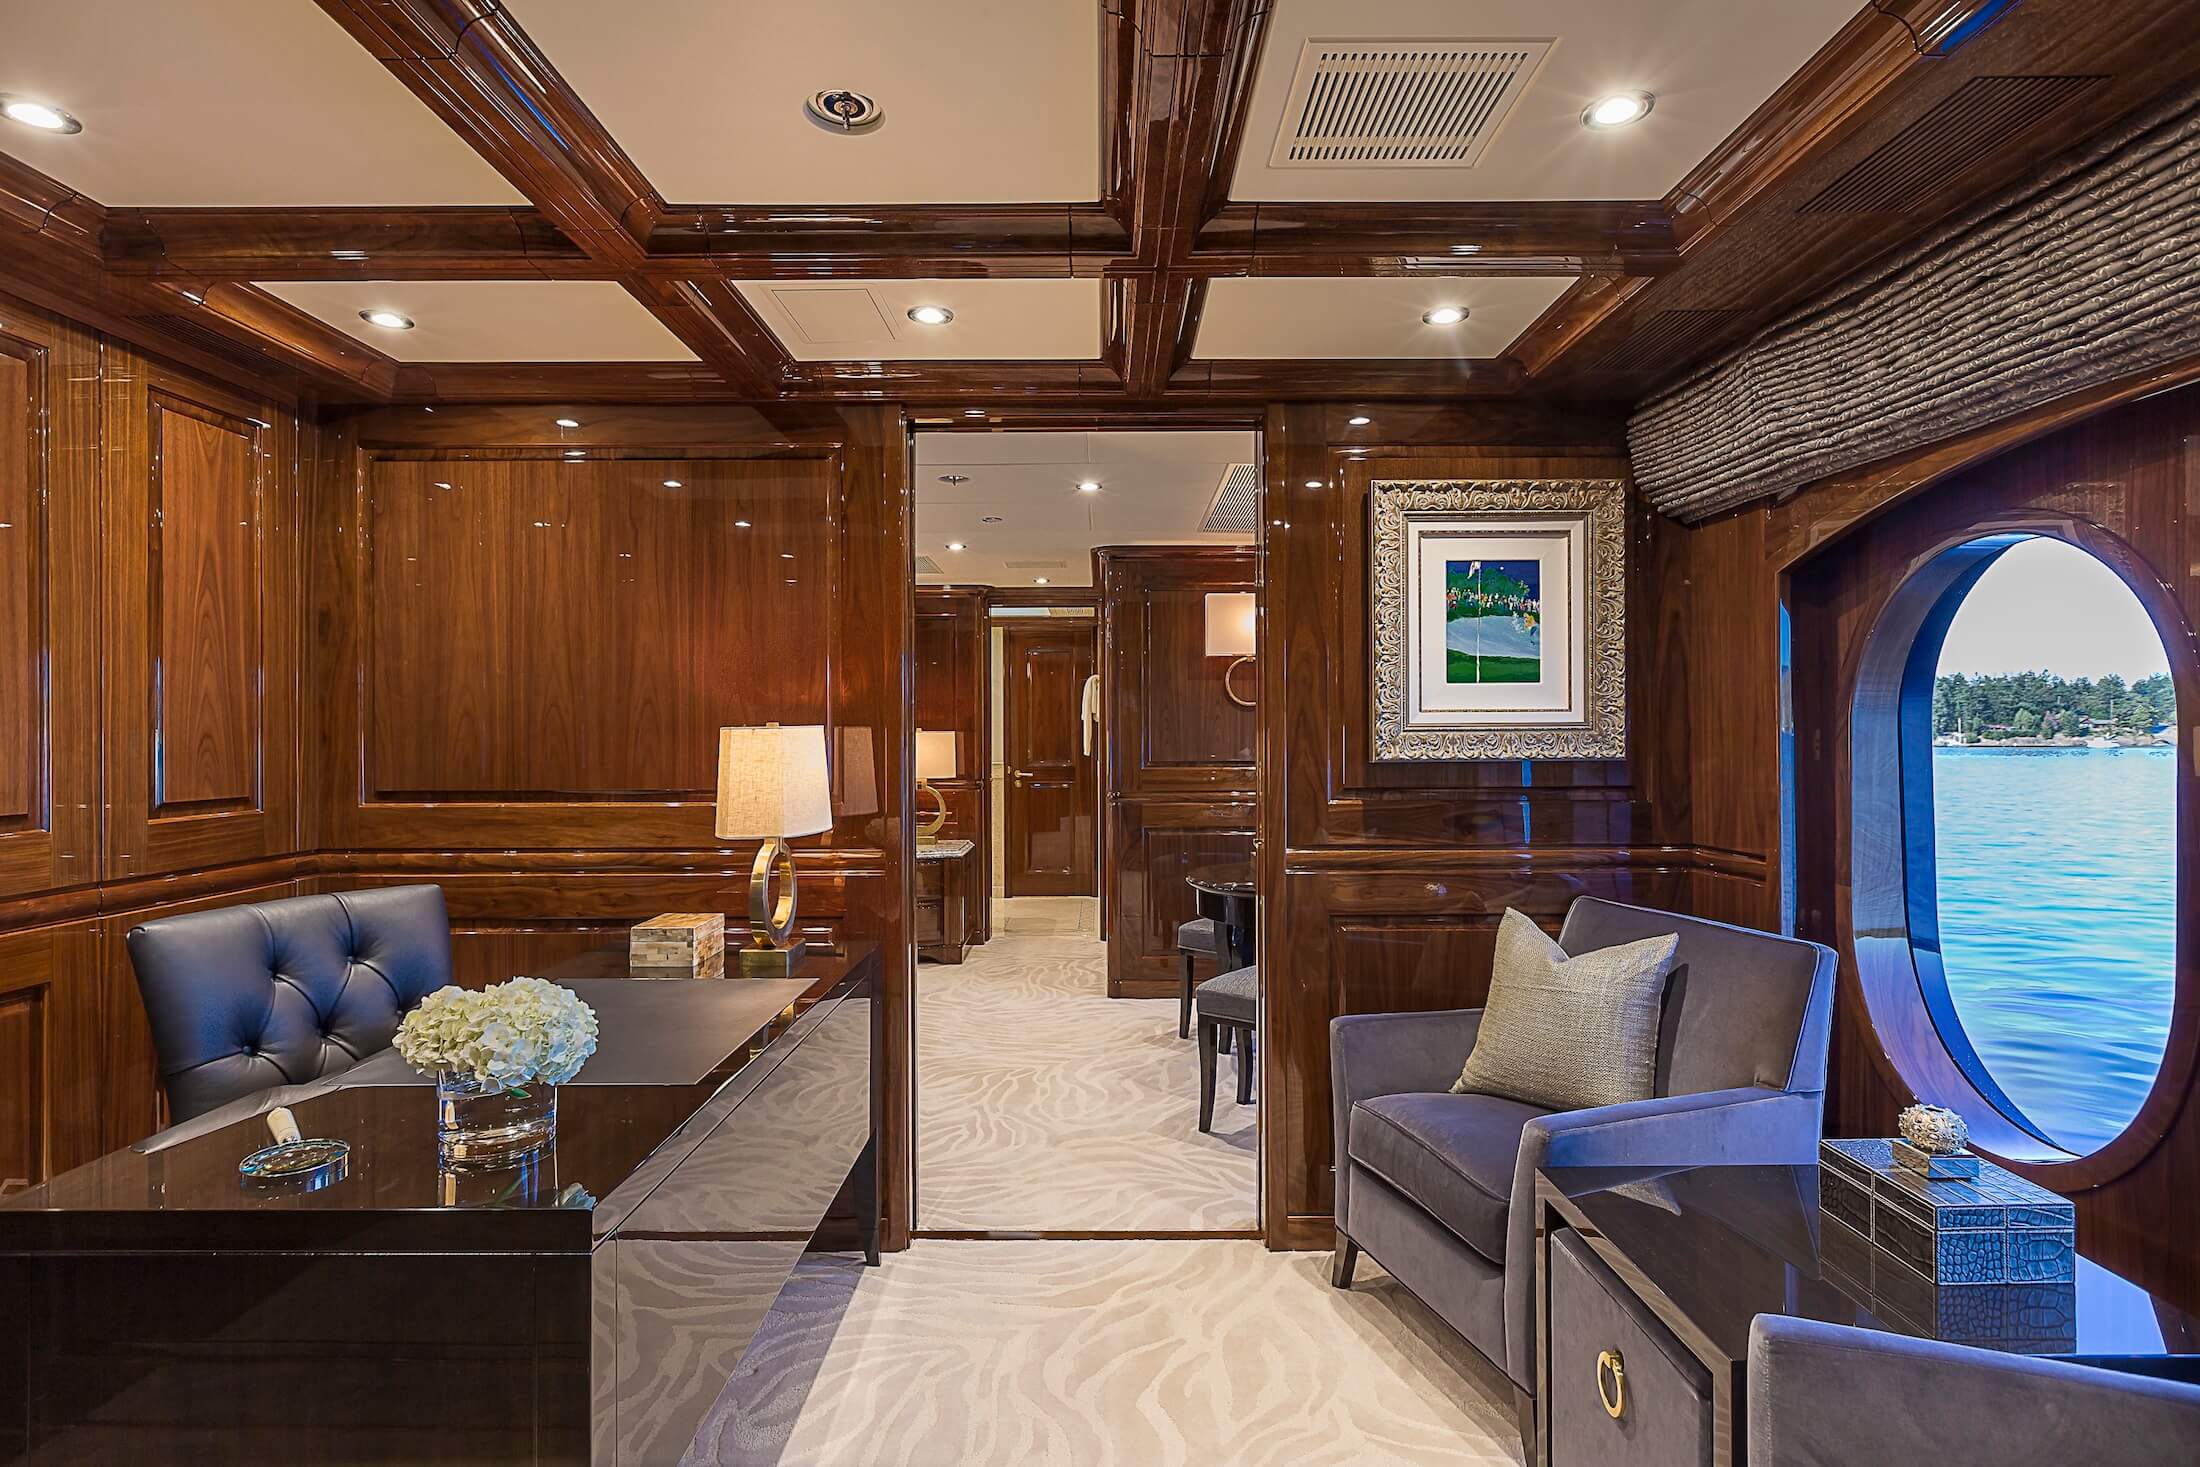 D'Natalin Luxury Yacht study